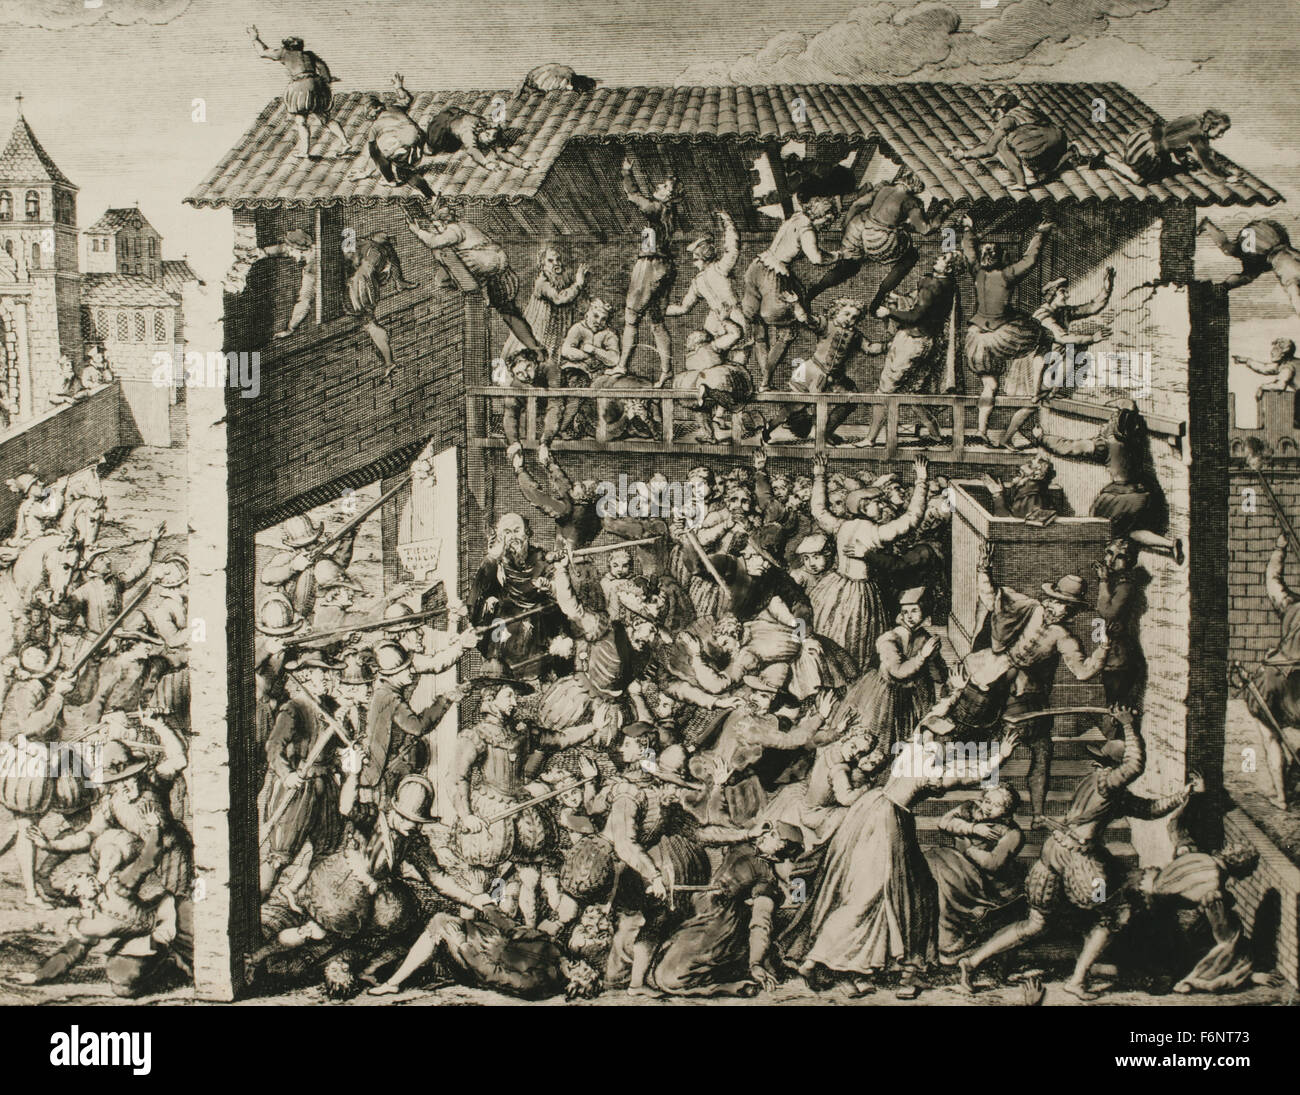 Francia. Masacre de Noemi. Asesinato de Huguenot adoradores y a los ciudadanos en una acción armada por tropas de Francisco, duque de Guisa, en Wassy, Francia el 1 de marzo de 1562. A partir de las guerras de religión francesas. Grabado. Foto de stock